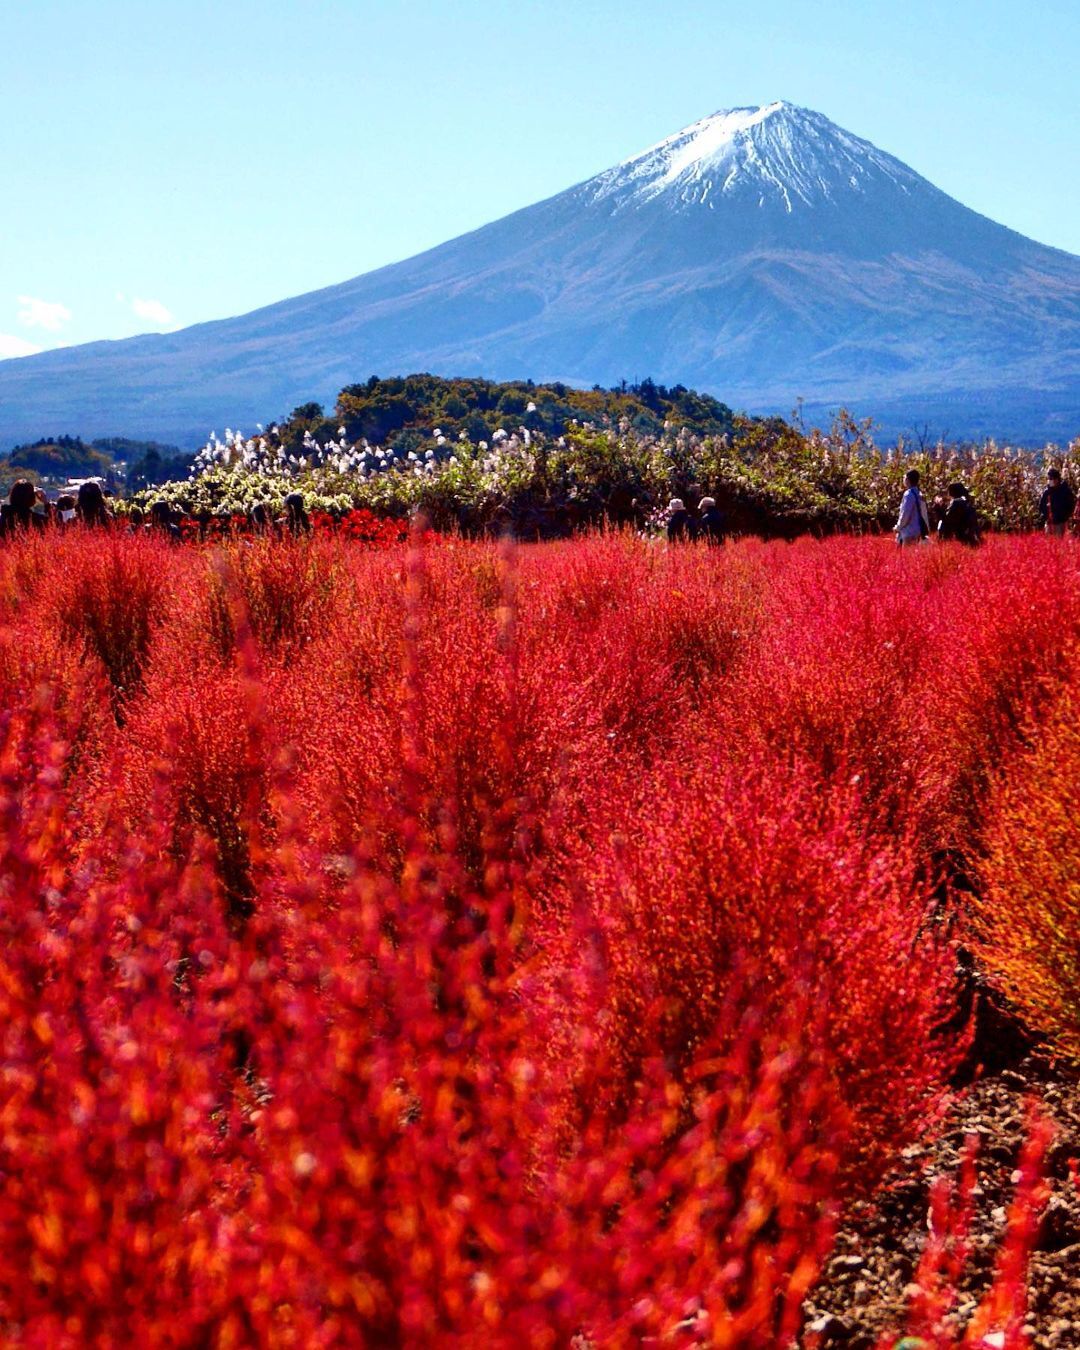 Mùa cỏ kochia nhuộm đỏ khắp Nhật Bản - 4